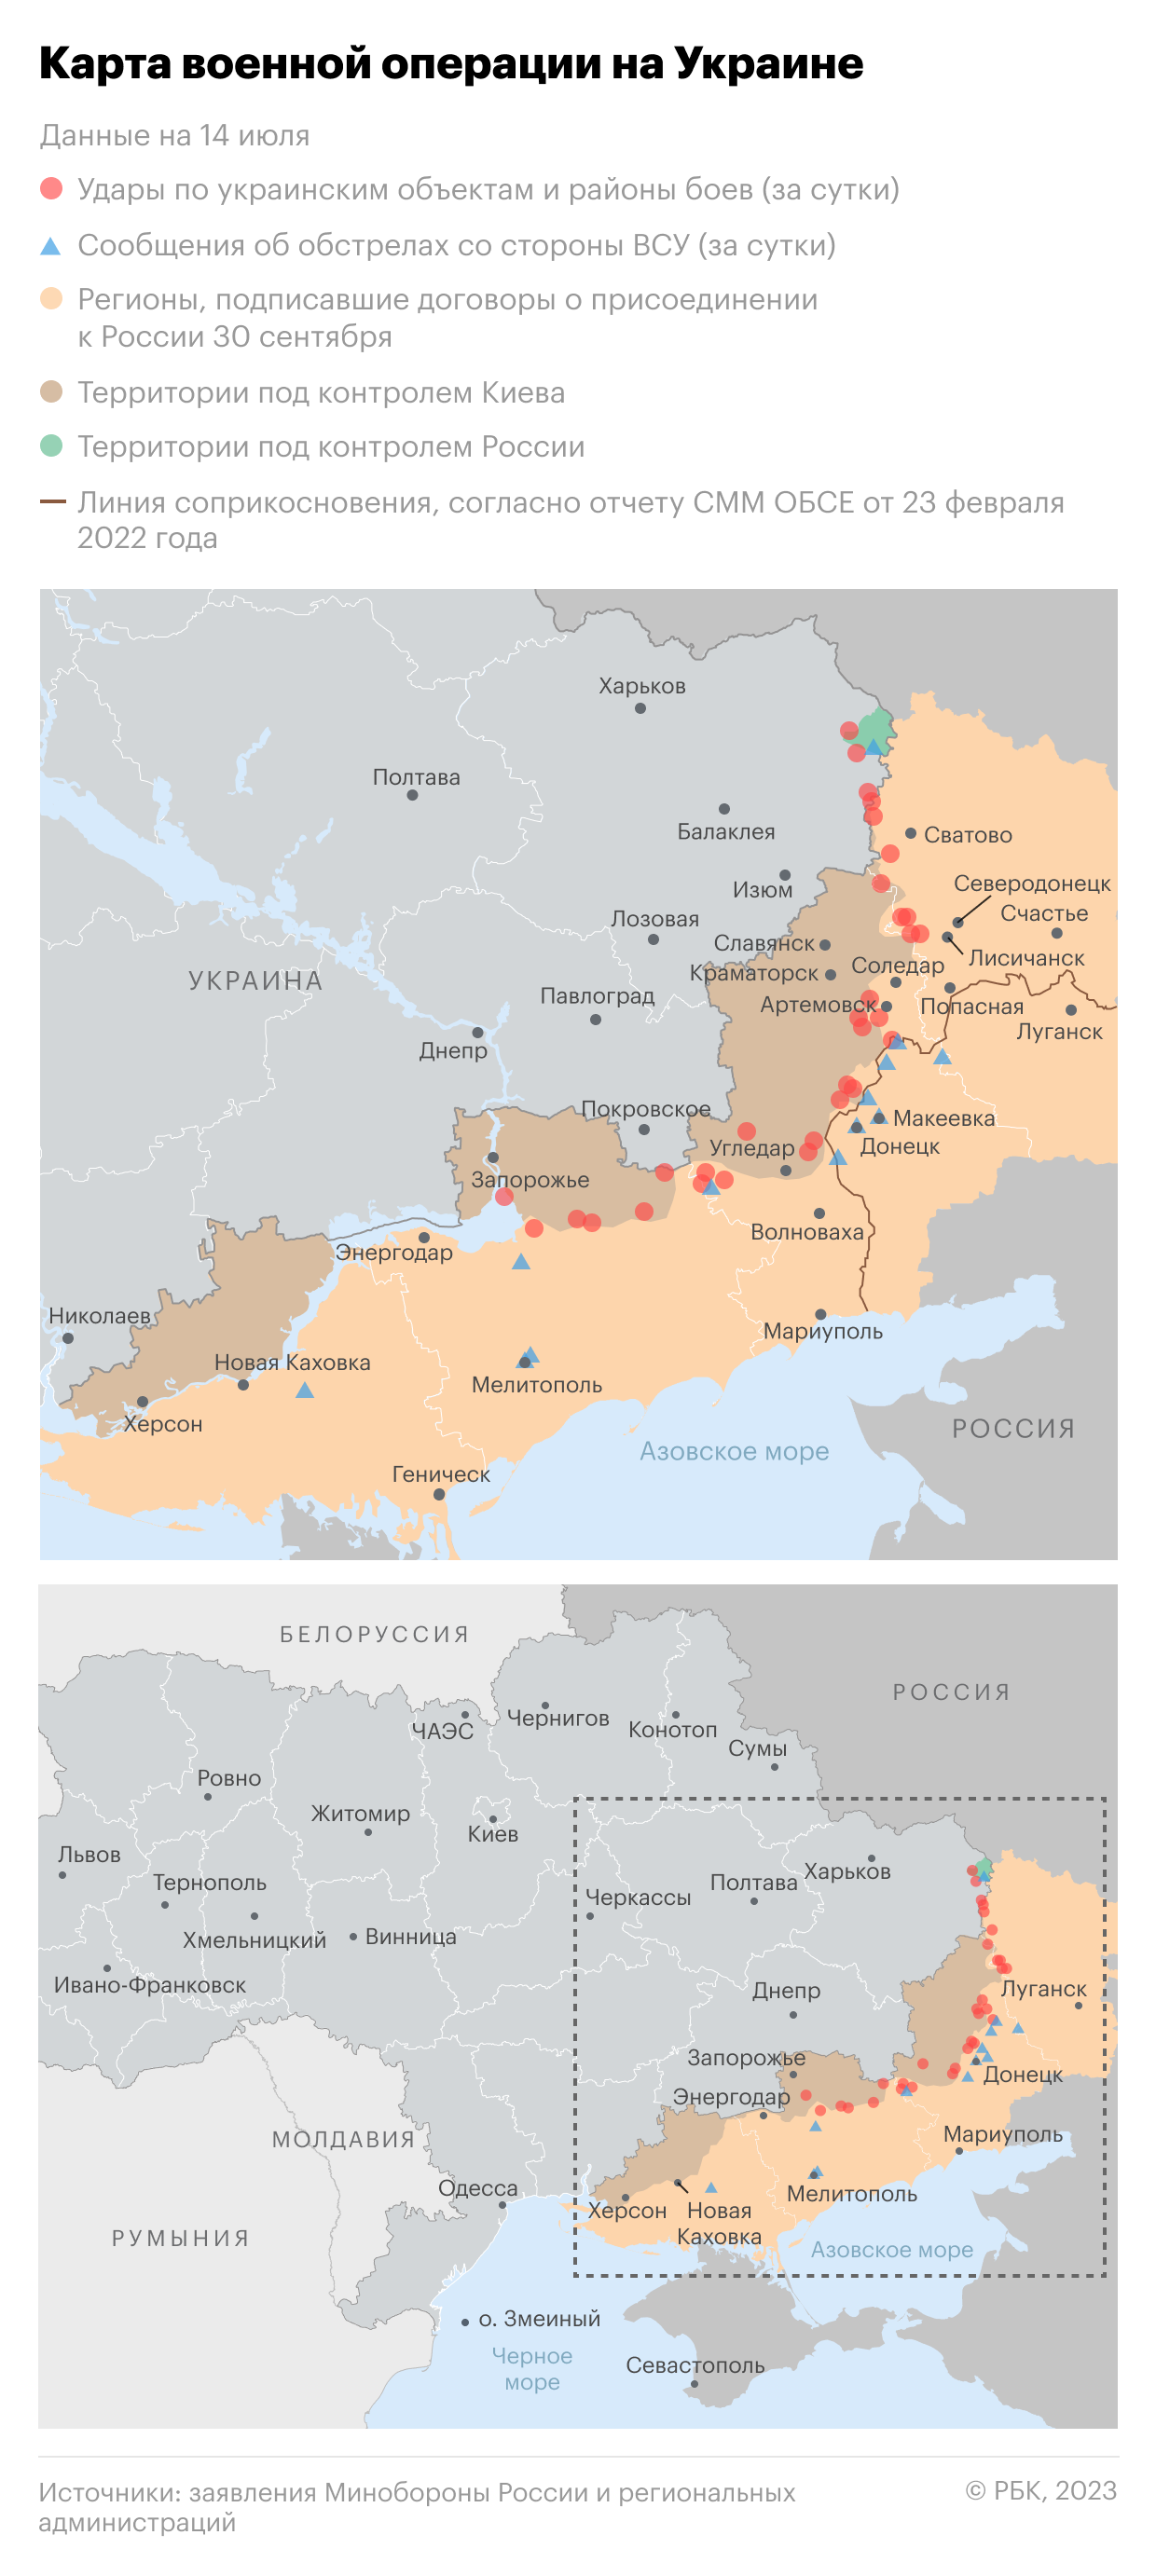 Военная операция на Украине. Карта на 14 июля"/>













